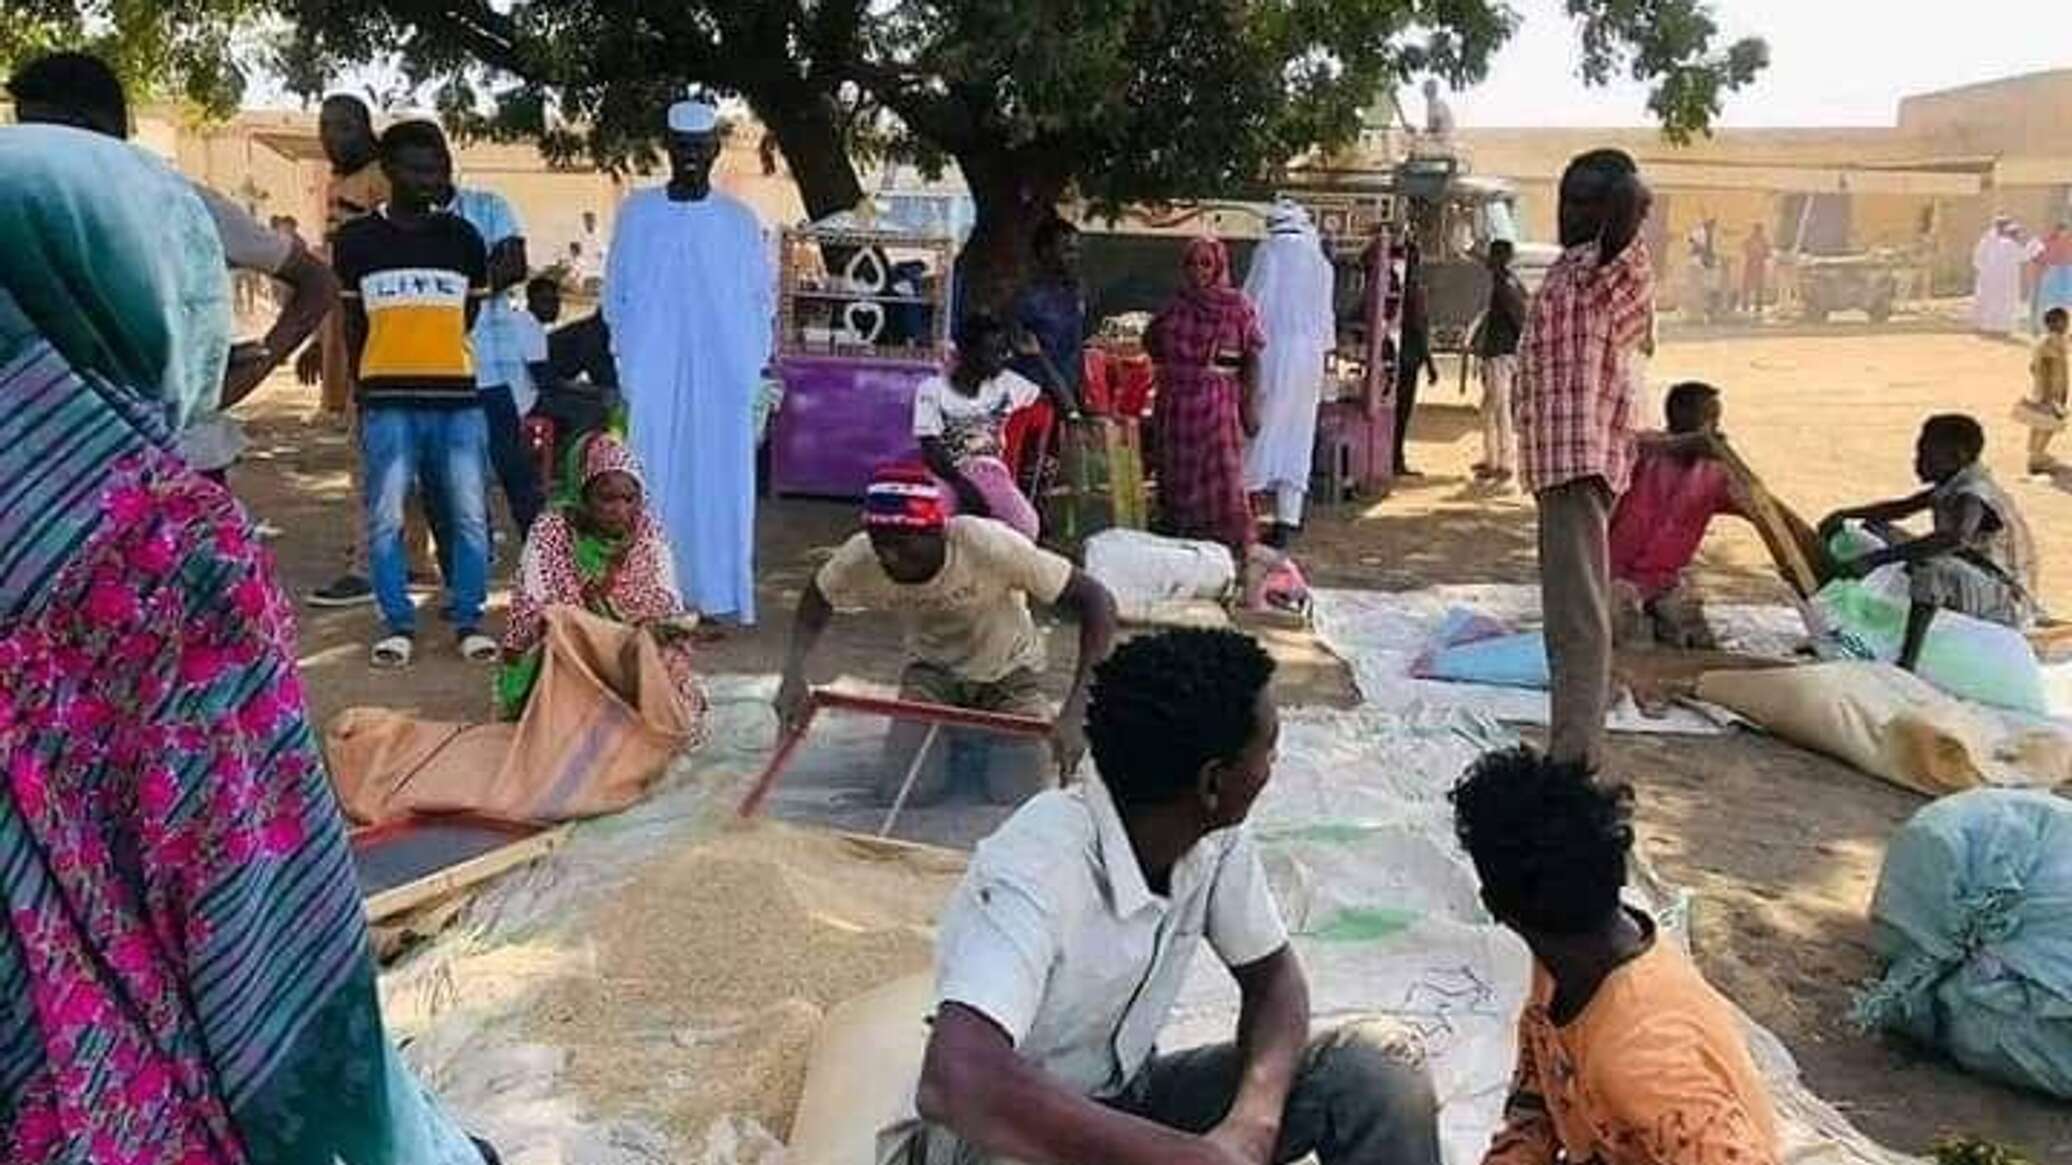 الأمم المتحدة تحذر من "أكبر أزمة نزوح في العالم" بسبب الصراع في السودان